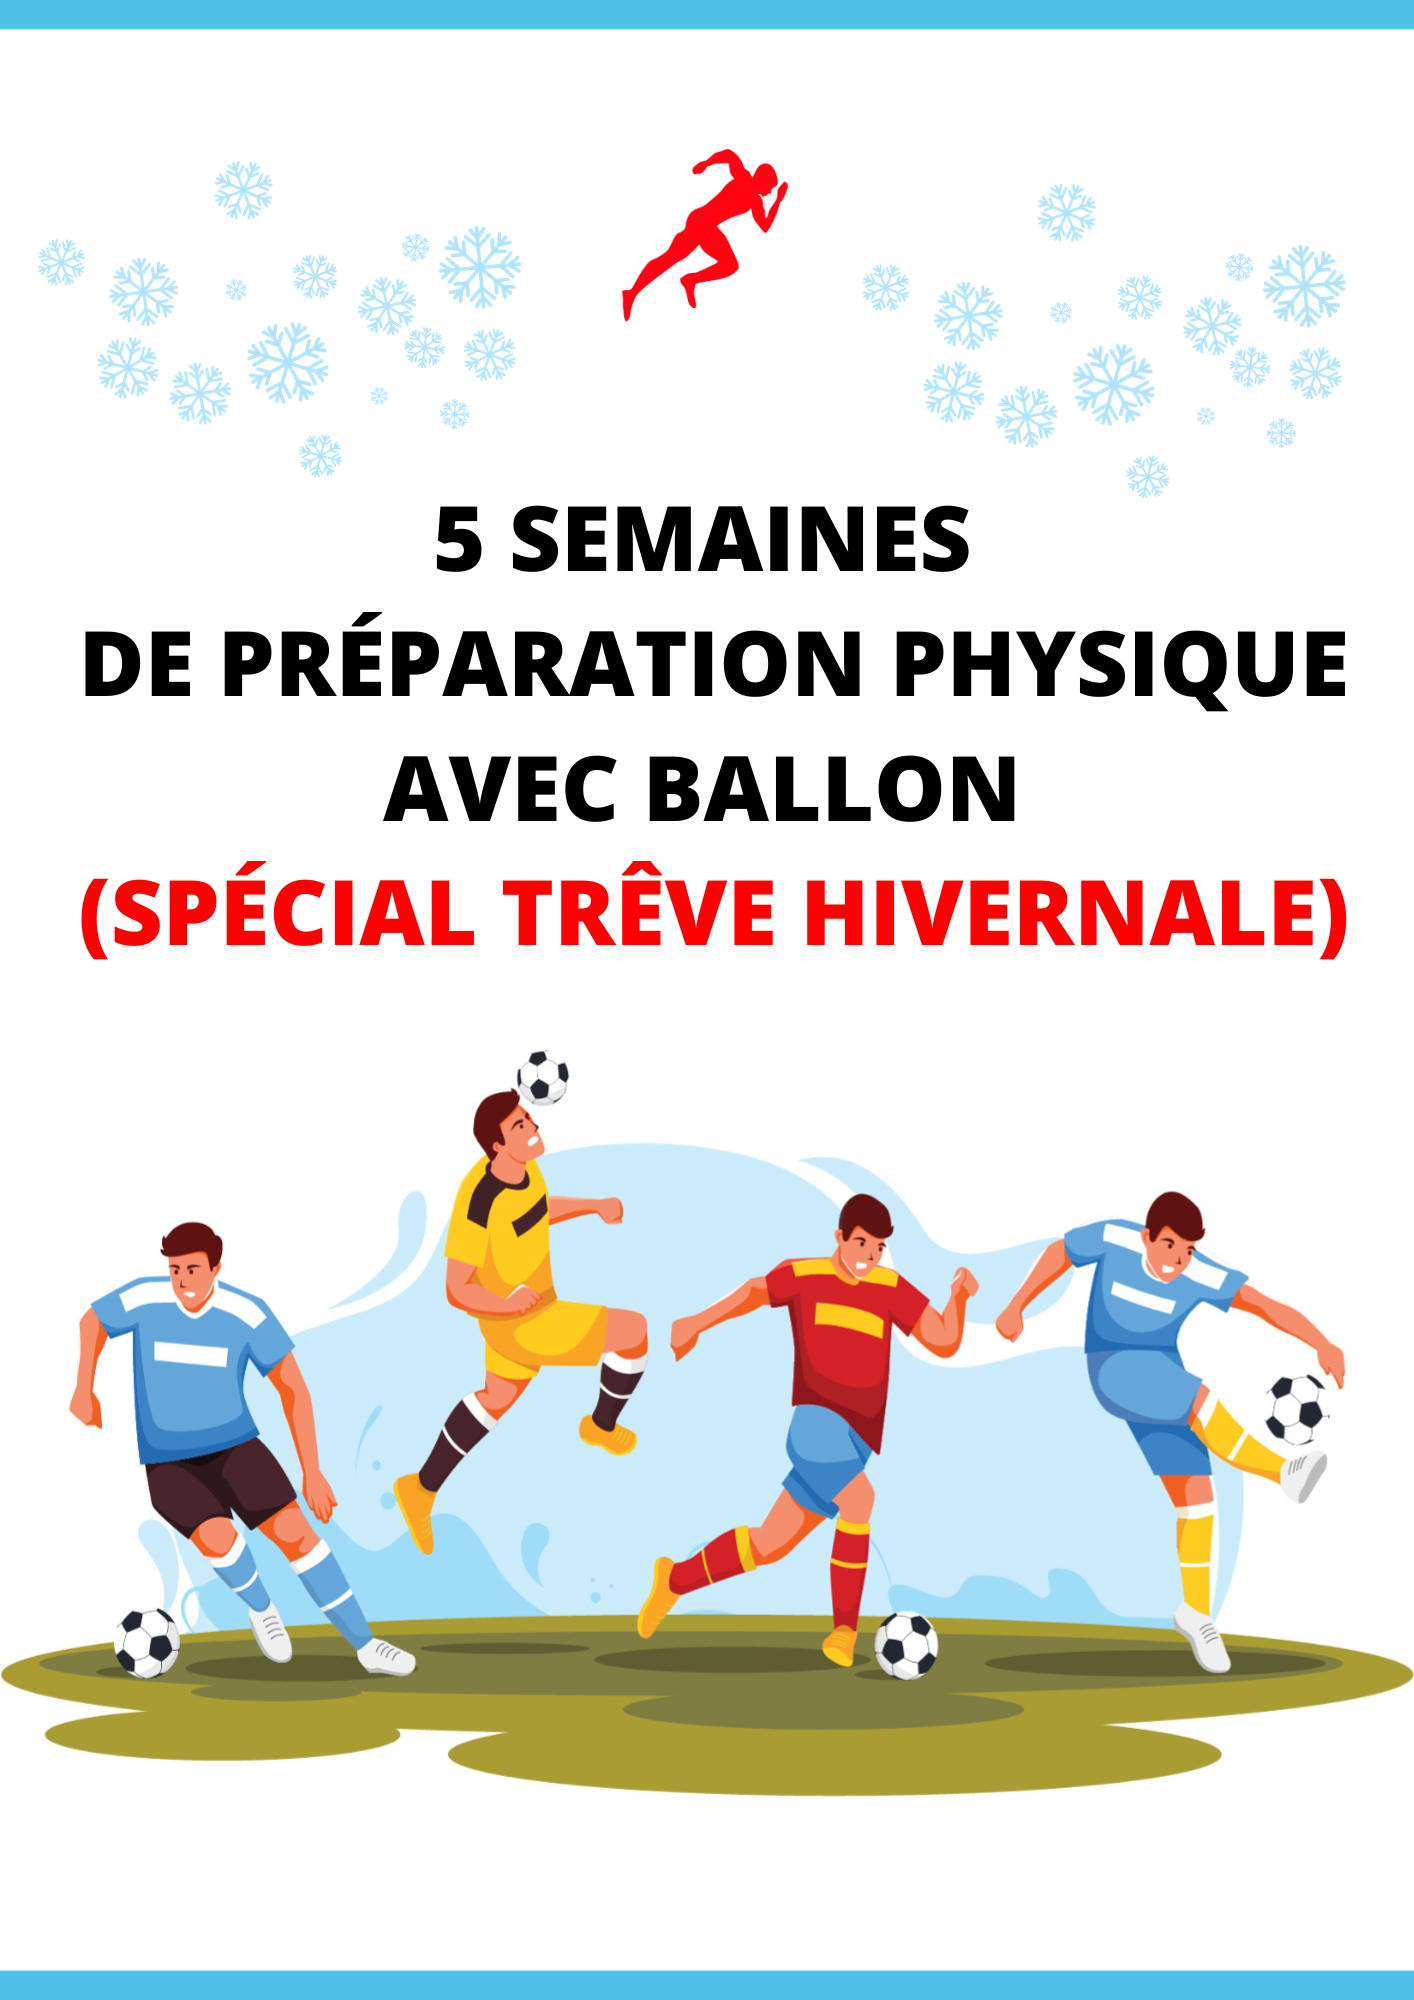 PROGRAMME SPÉCIAL ''TRÊVE HIVERNALE'' SUR 5 SEMAINES EN FOOTBALL AMATEUR (AVEC BALLON)